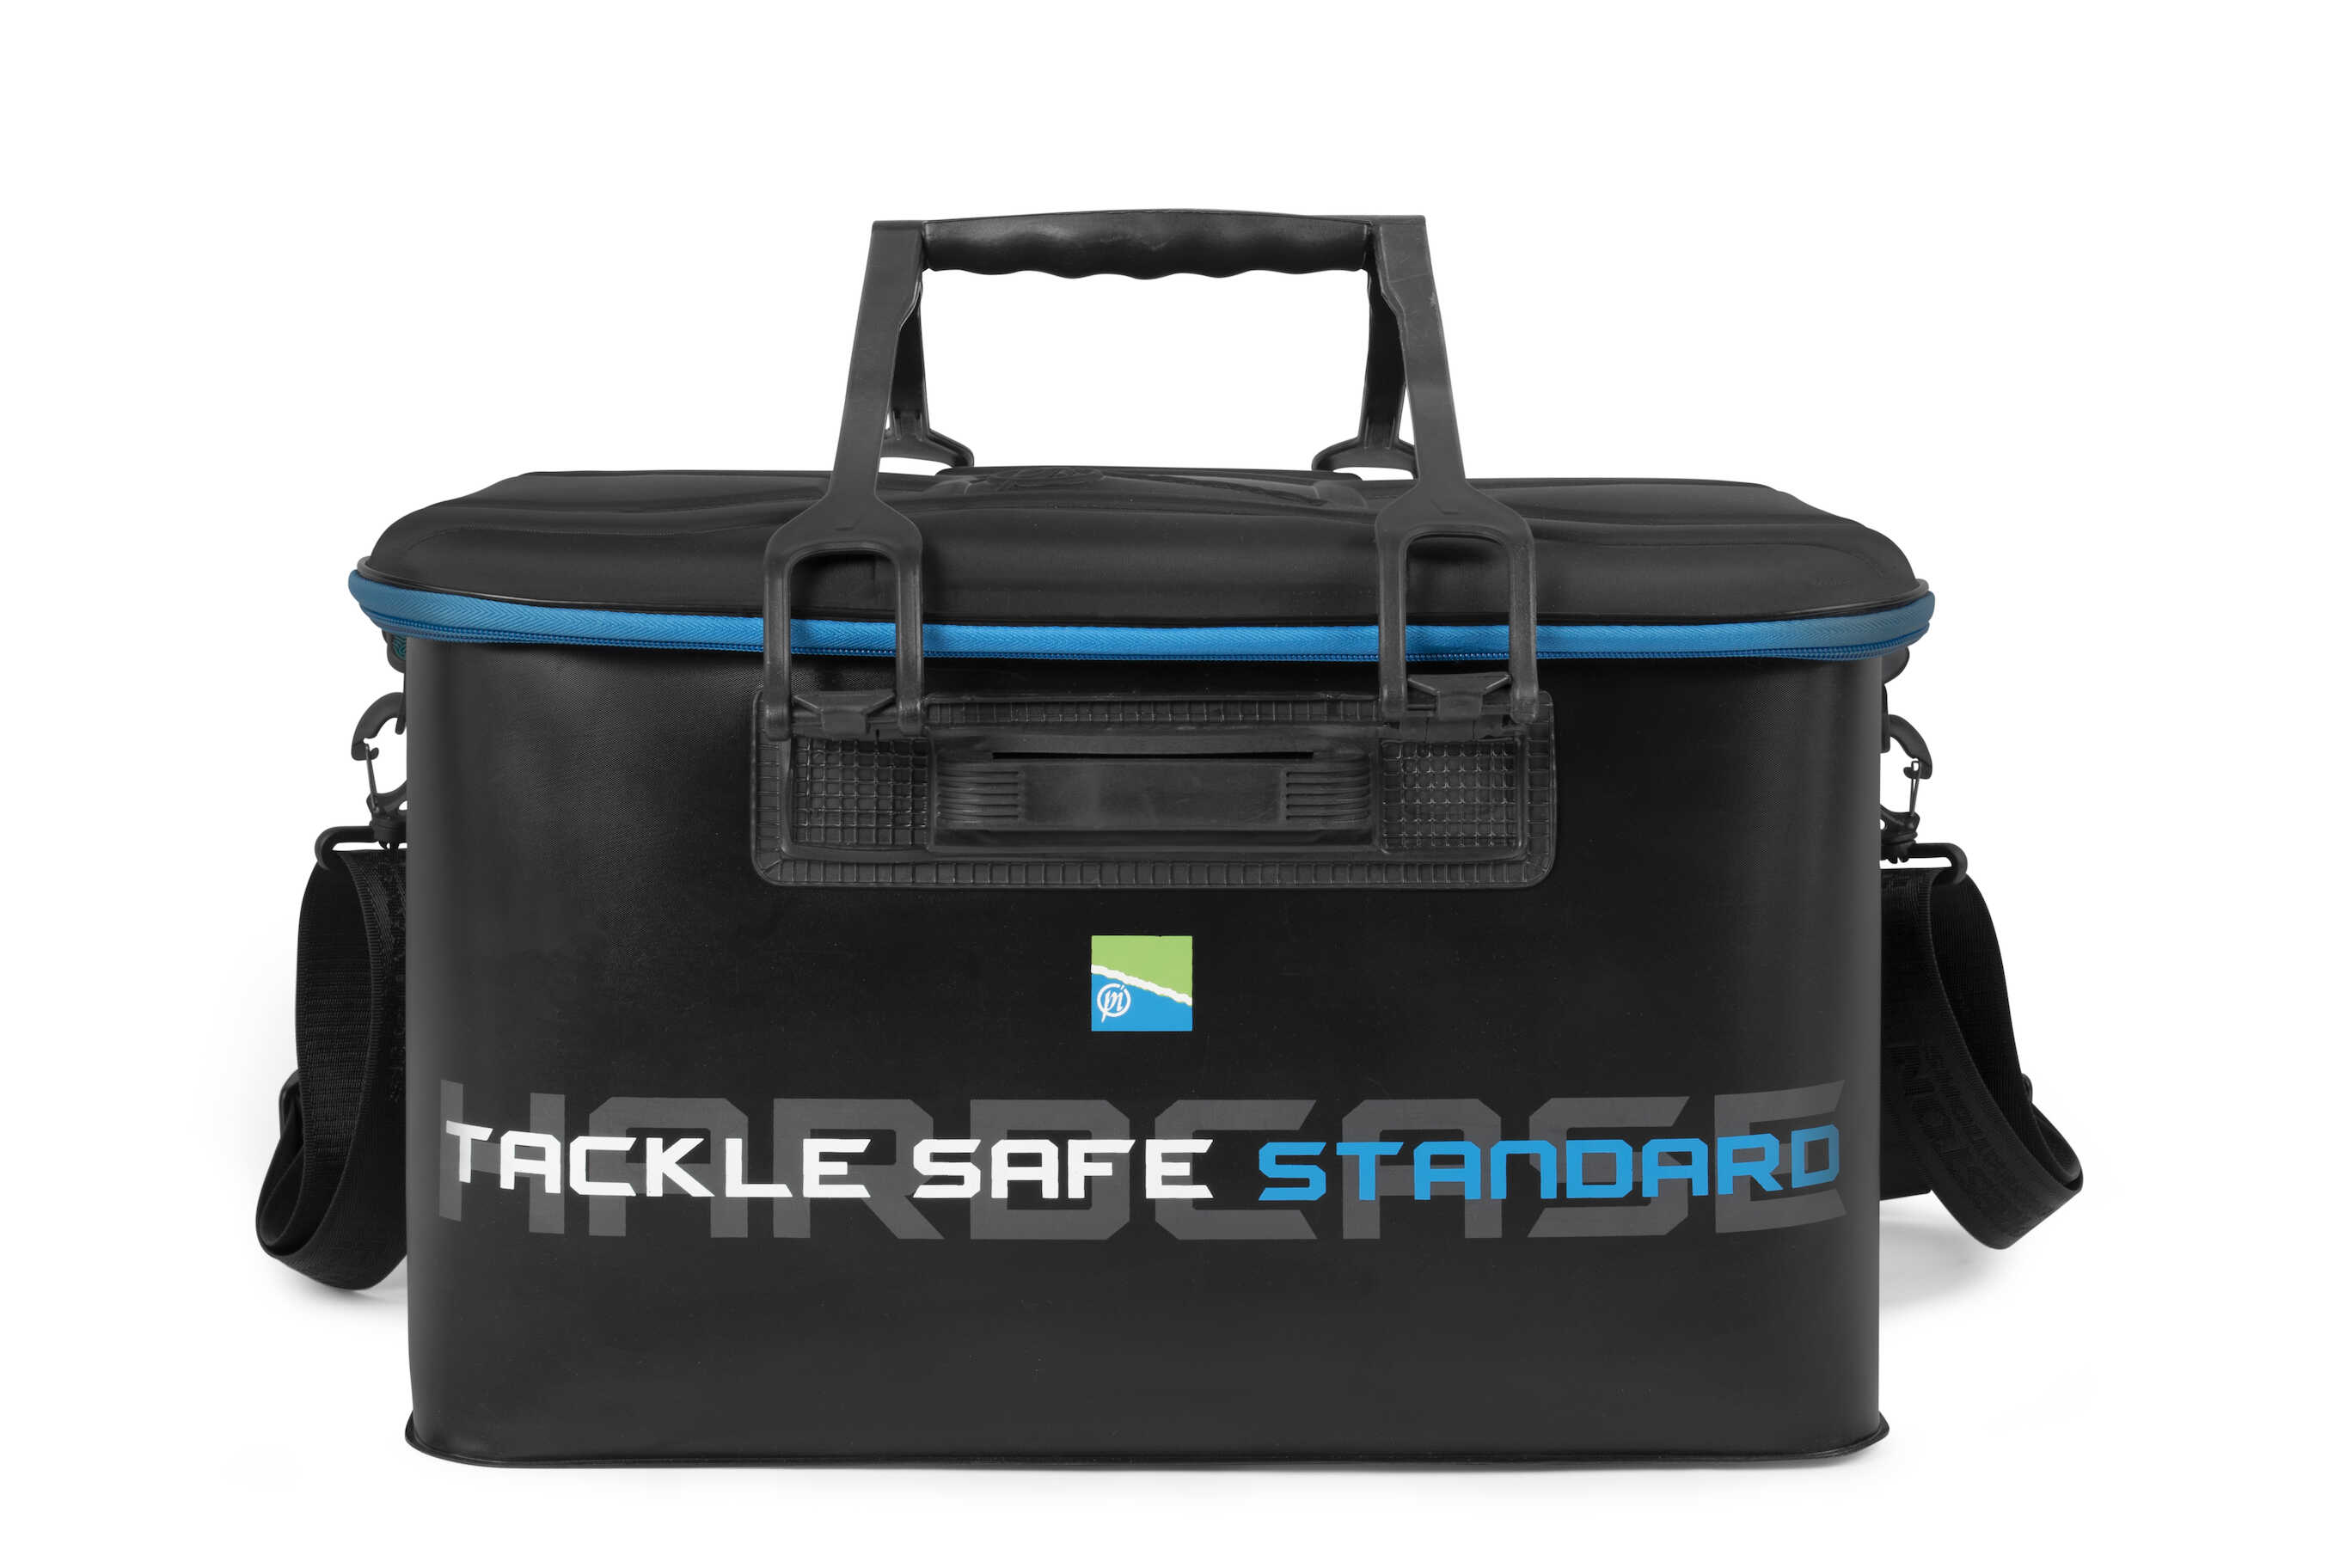 Sac de transport Preston Hardcase Tackle Safe Standard